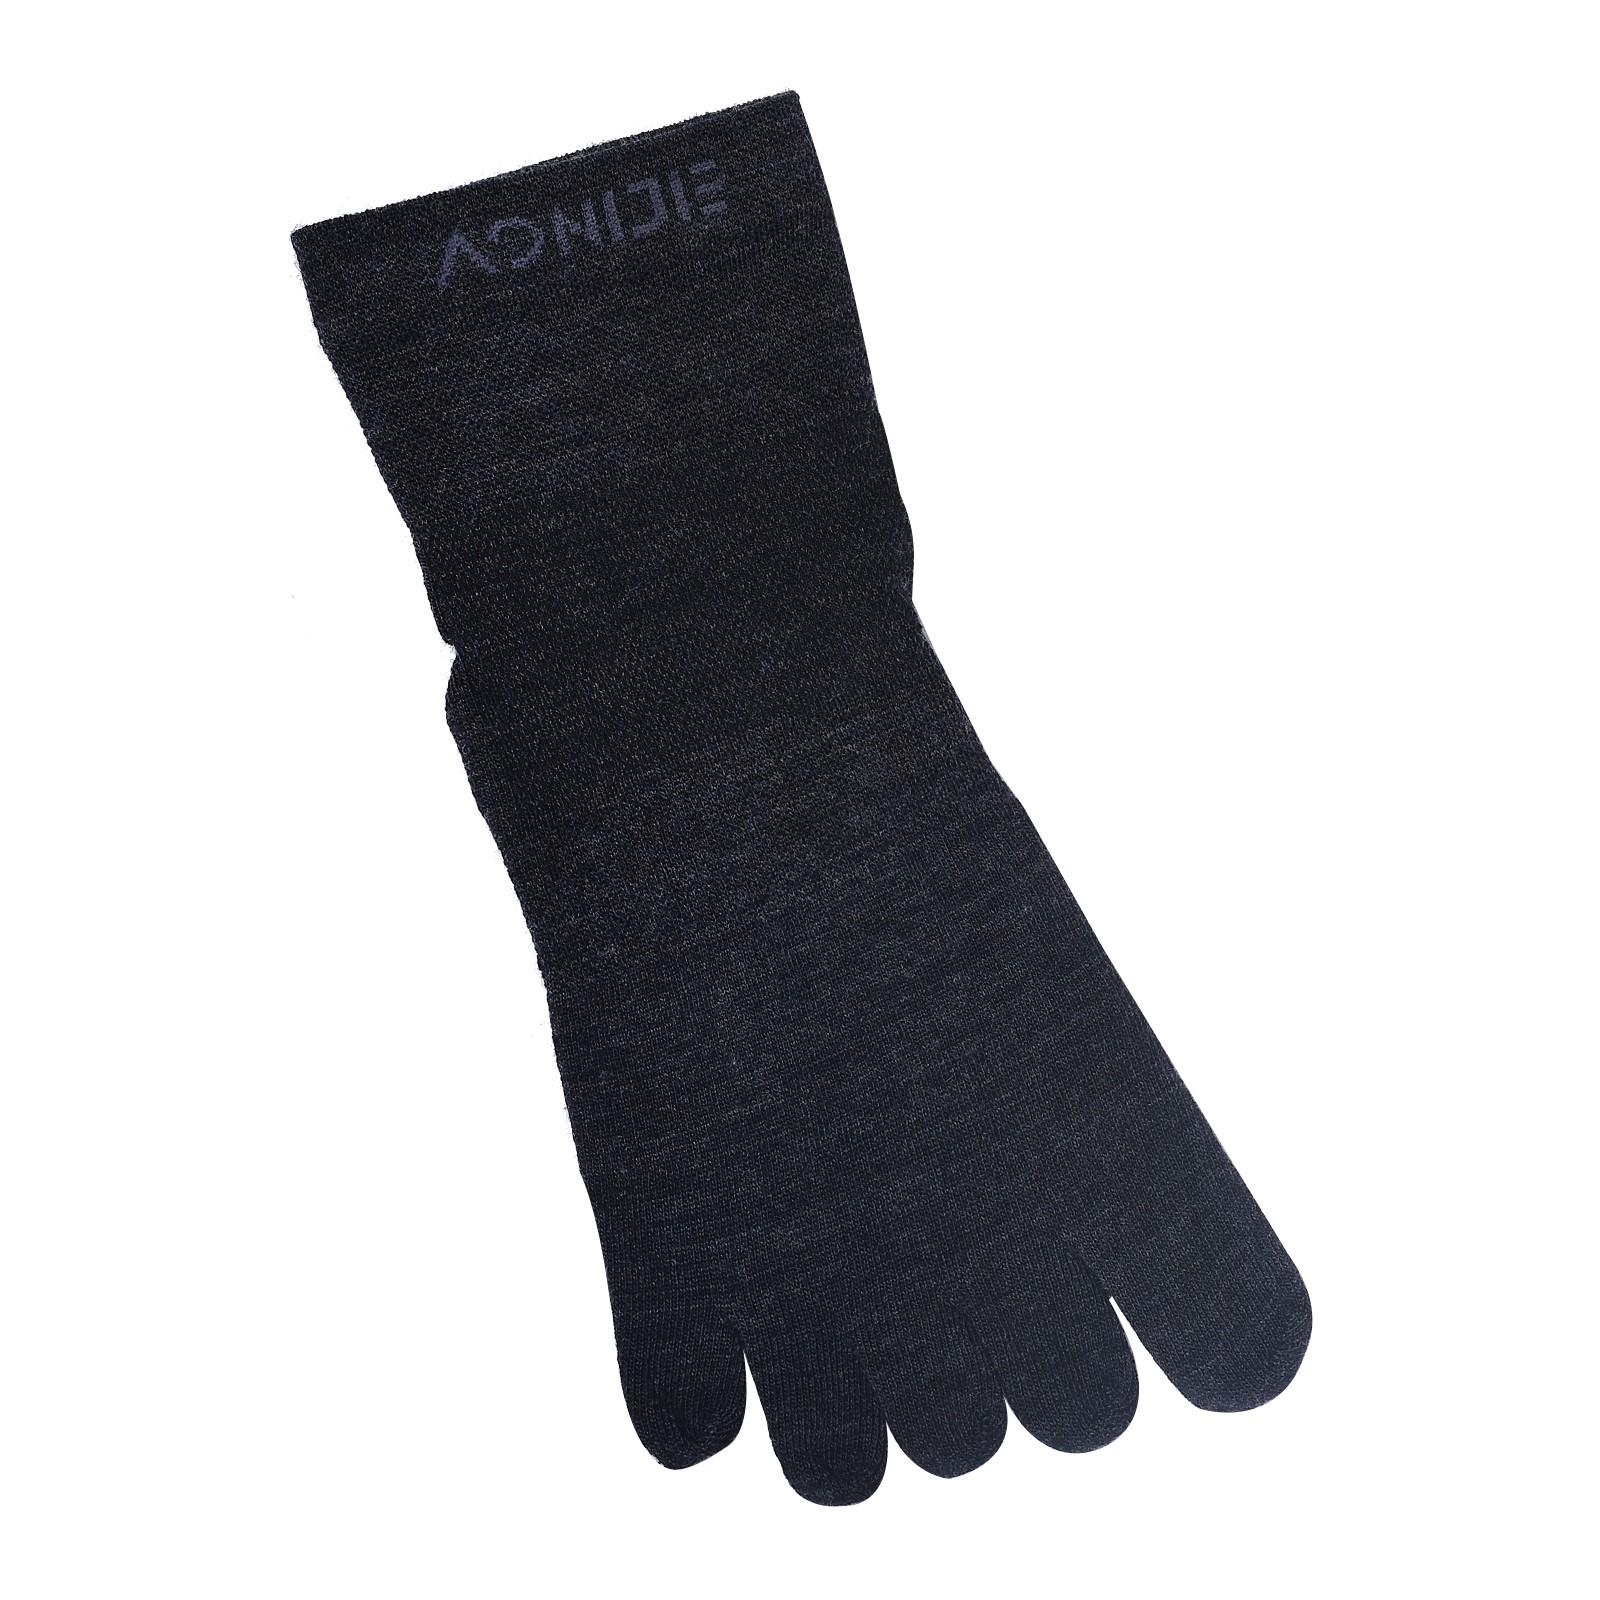 1 par de calcetines deportivos AONIJIE E4823 de lana con cinco dedos, calcetines transpirables con punta cálida para correr, ciclismo, escalada de montaña, sin dedos